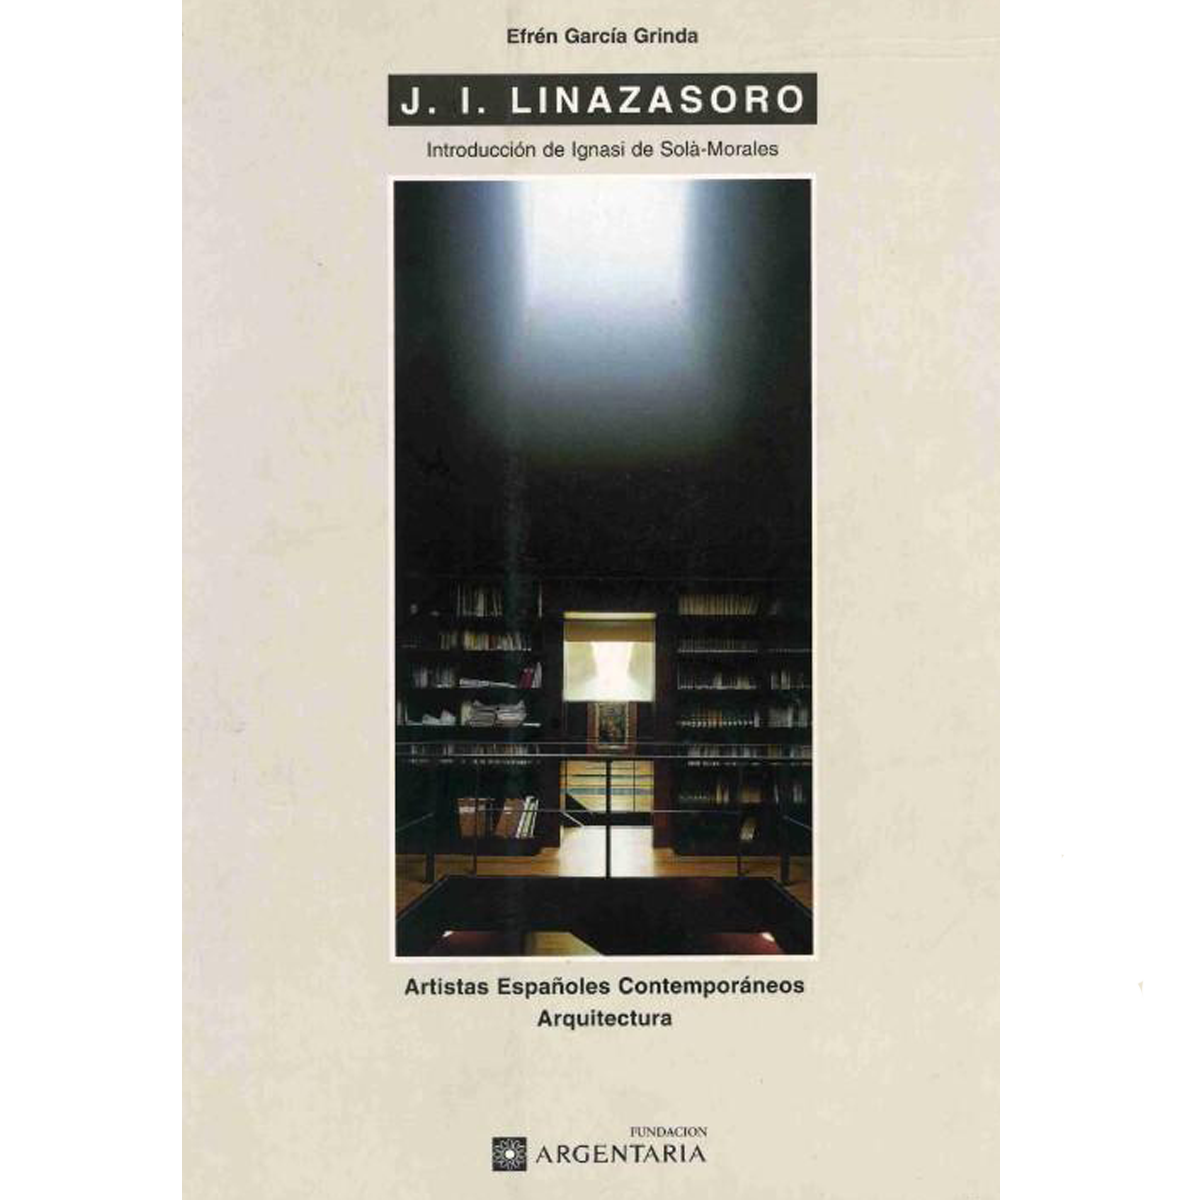 J. I. Linazasoro